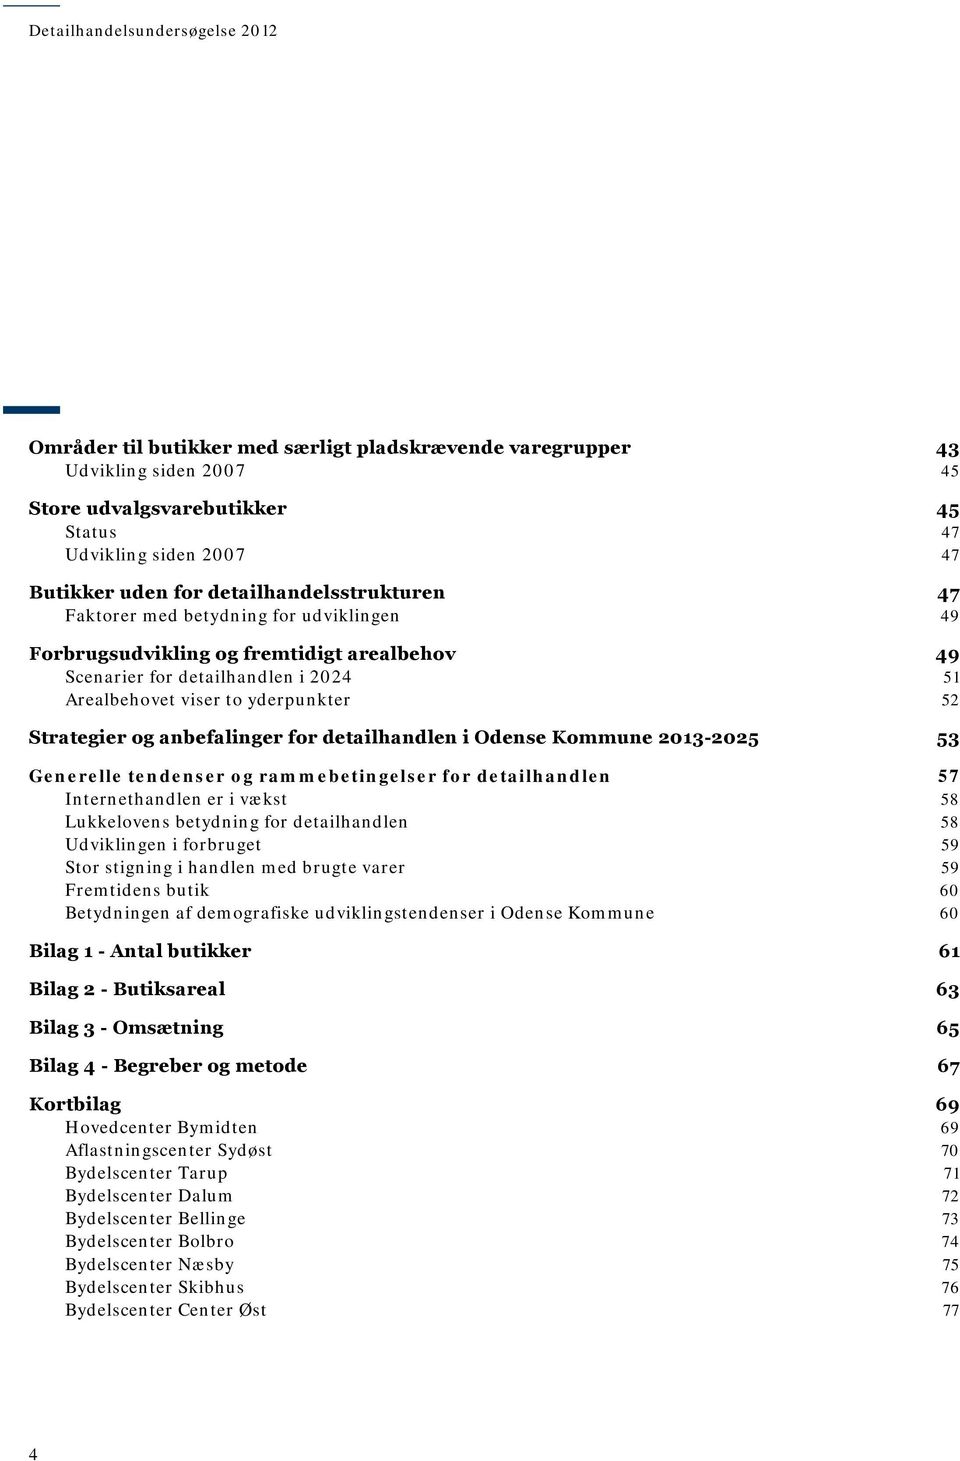 anbefalinger for detailhandlen i Odense Kommune 03-05 53 Generelle tendenser og rammebetingelser for detailhandlen 57 Internethandlen er i vækst 58 Lukkelovens betydning for detailhandlen 58